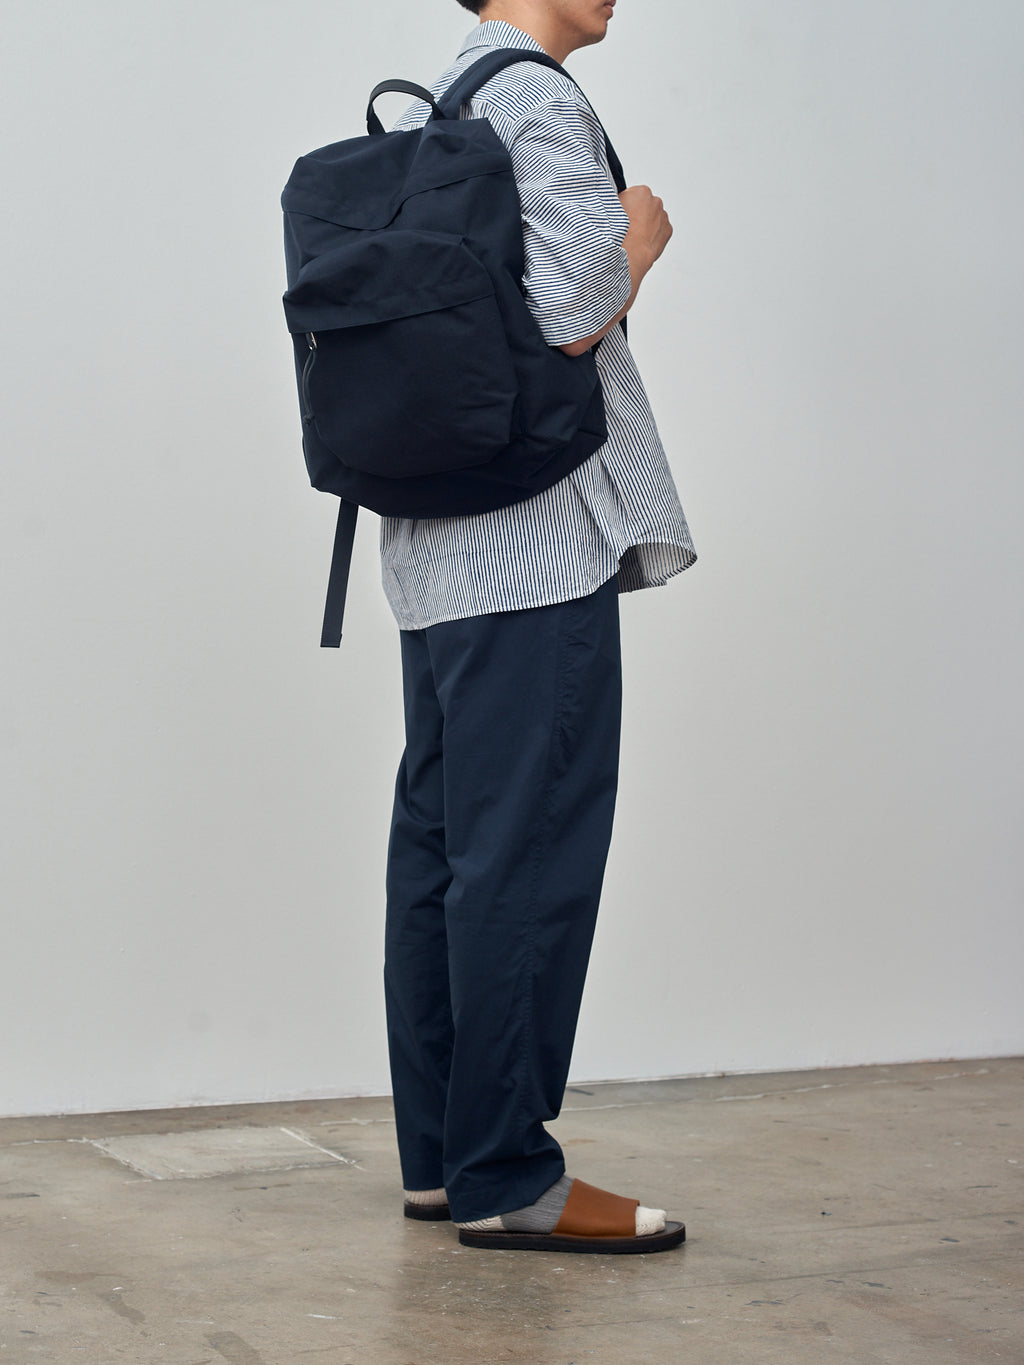 Namu Shop - Aeta Backpack TF M - Navy